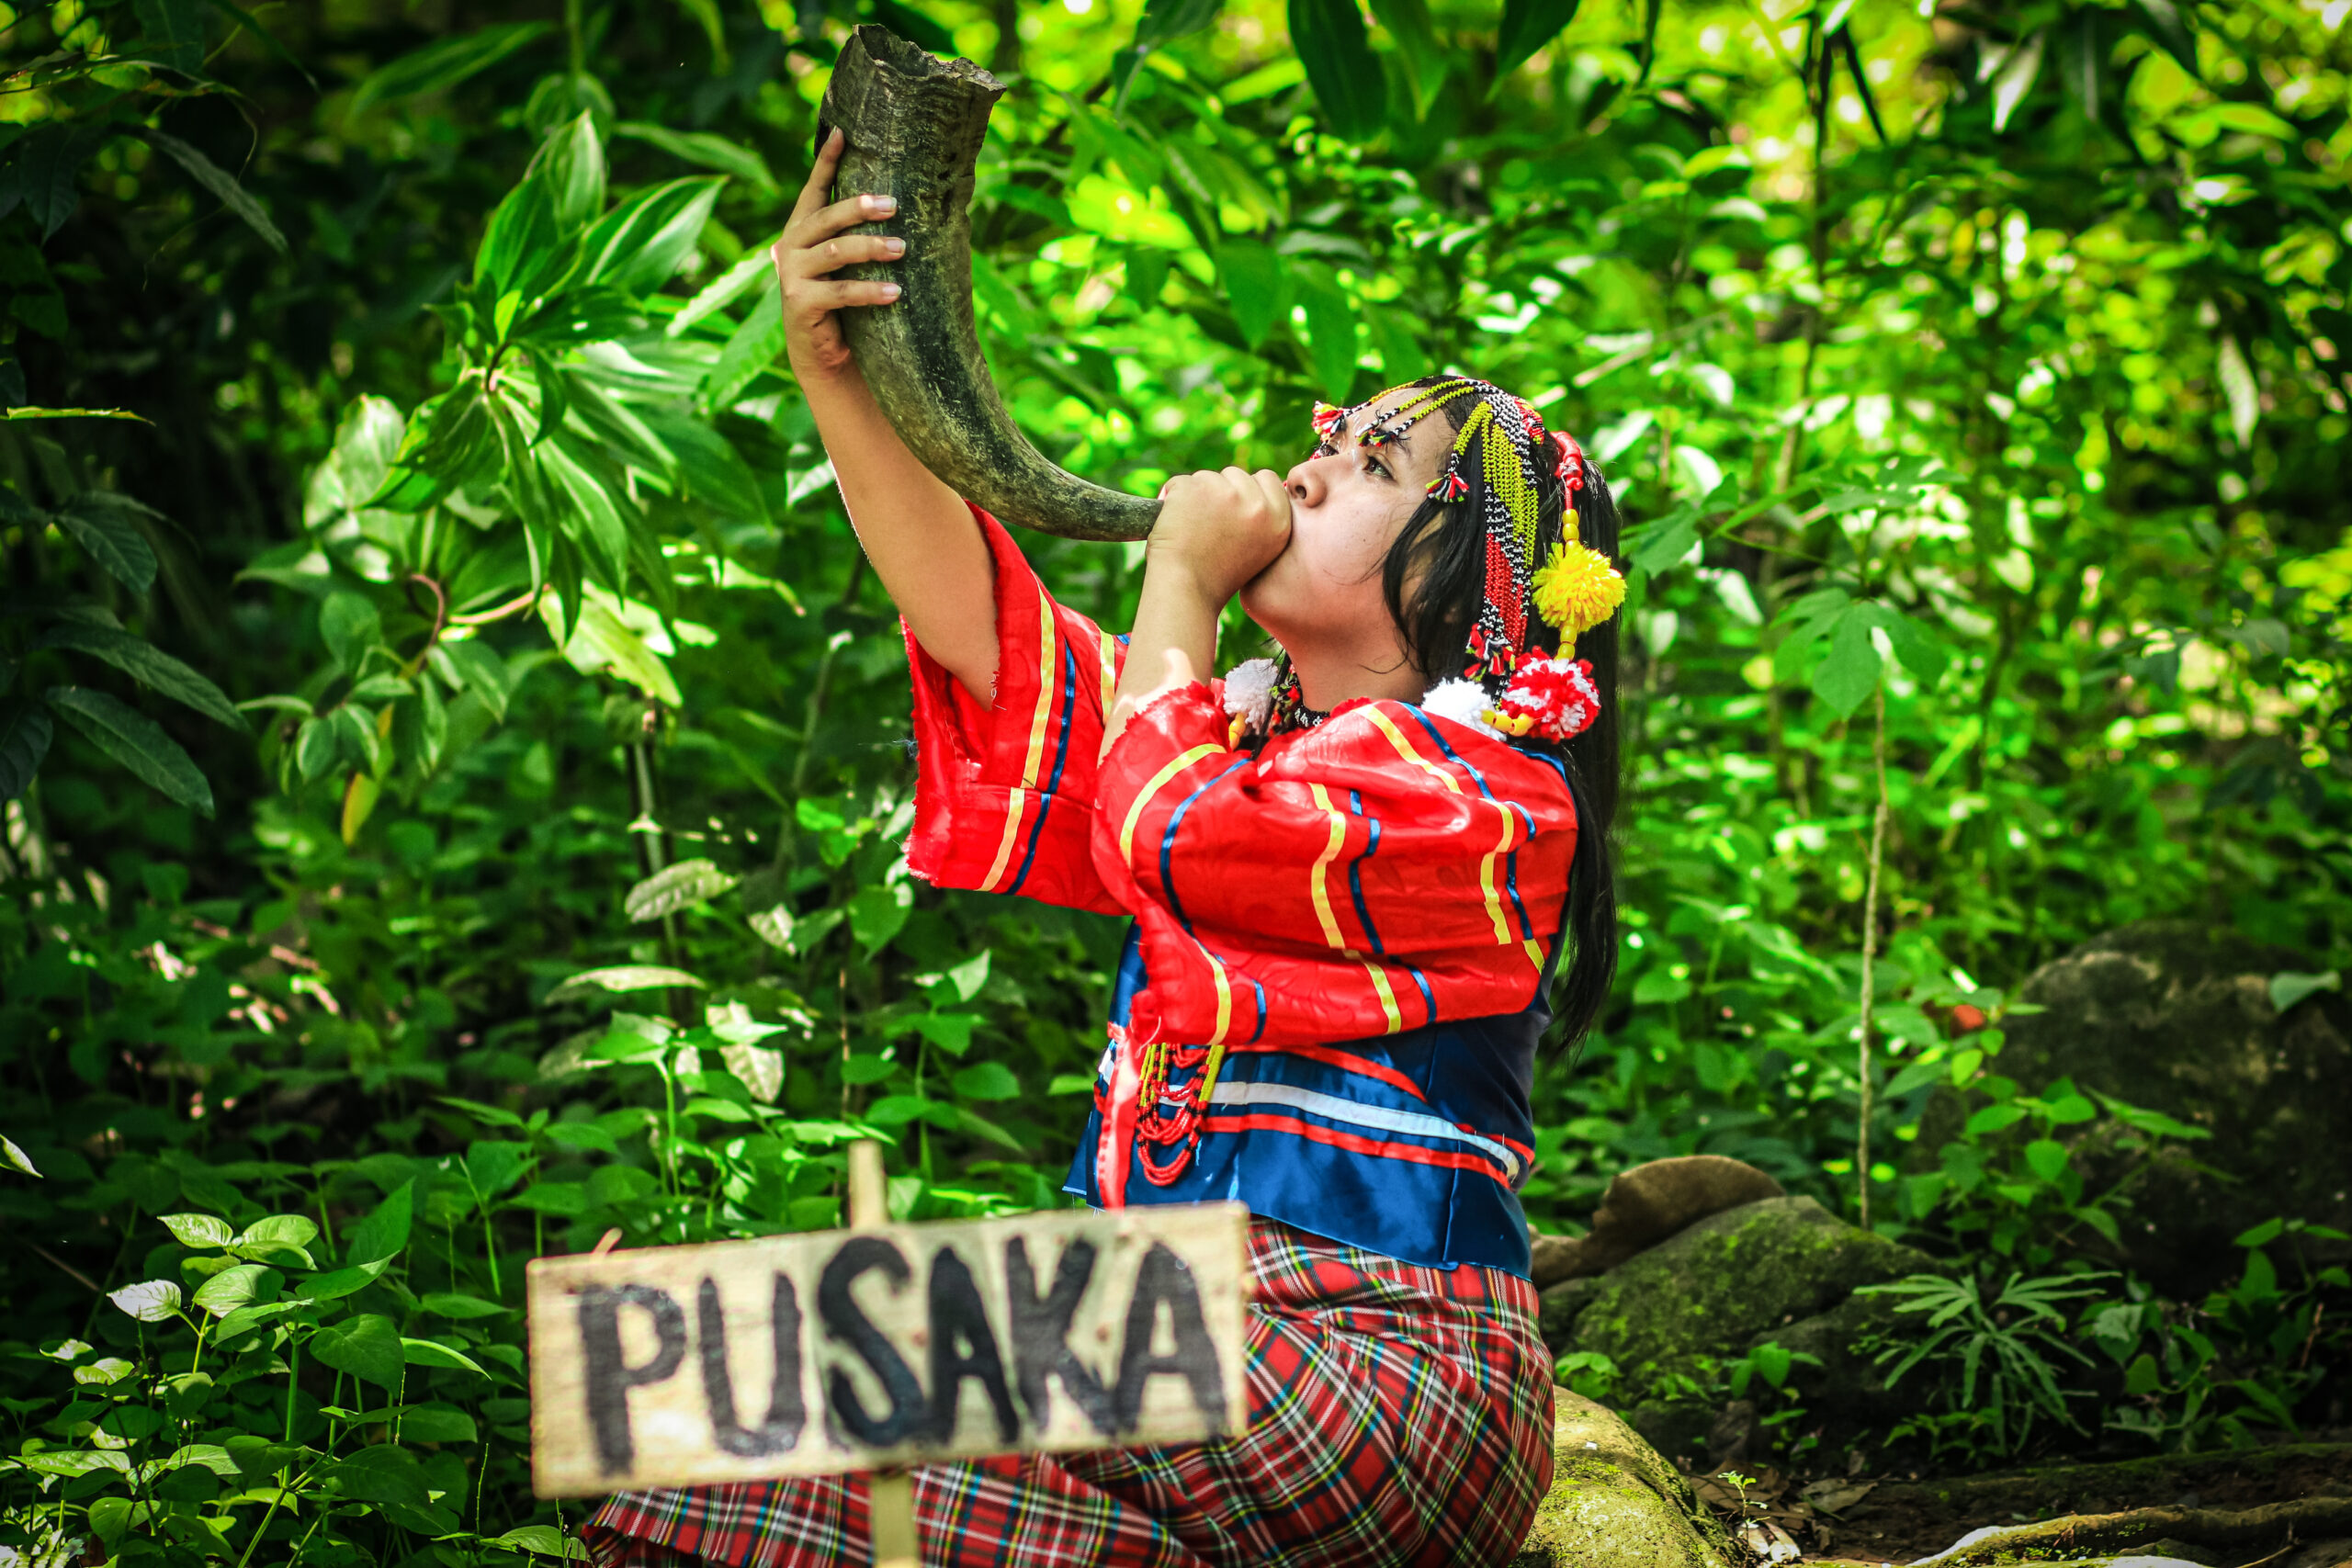 Jeune femme indigène de la tribu Obu Manuvu d'Indonésie tenant une corne pour appeler Pusaka, elle est l'esprit de la forêt. 
Gagnants du Concours Photo “Solutions Innovatrices des Peuples Autochtones”.
Nom de la photographie : Pusaka. Auteur : Prince Loyd C. Besorio